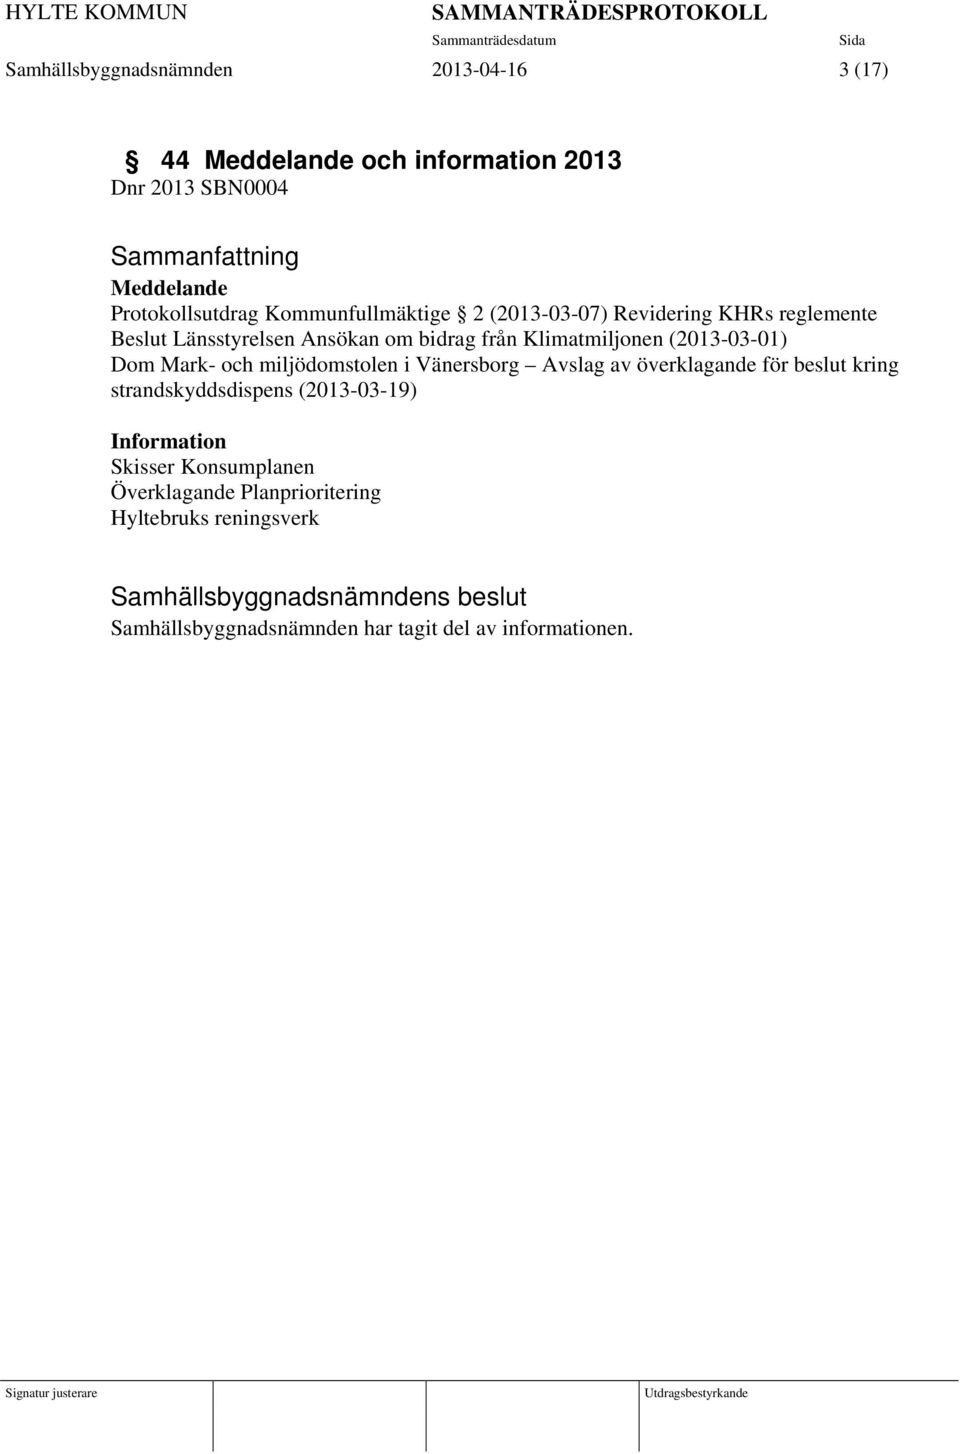 (2013-03-01) Dom Mark- och miljödomstolen i Vänersborg Avslag av överklagande för beslut kring strandskyddsdispens (2013-03-19)